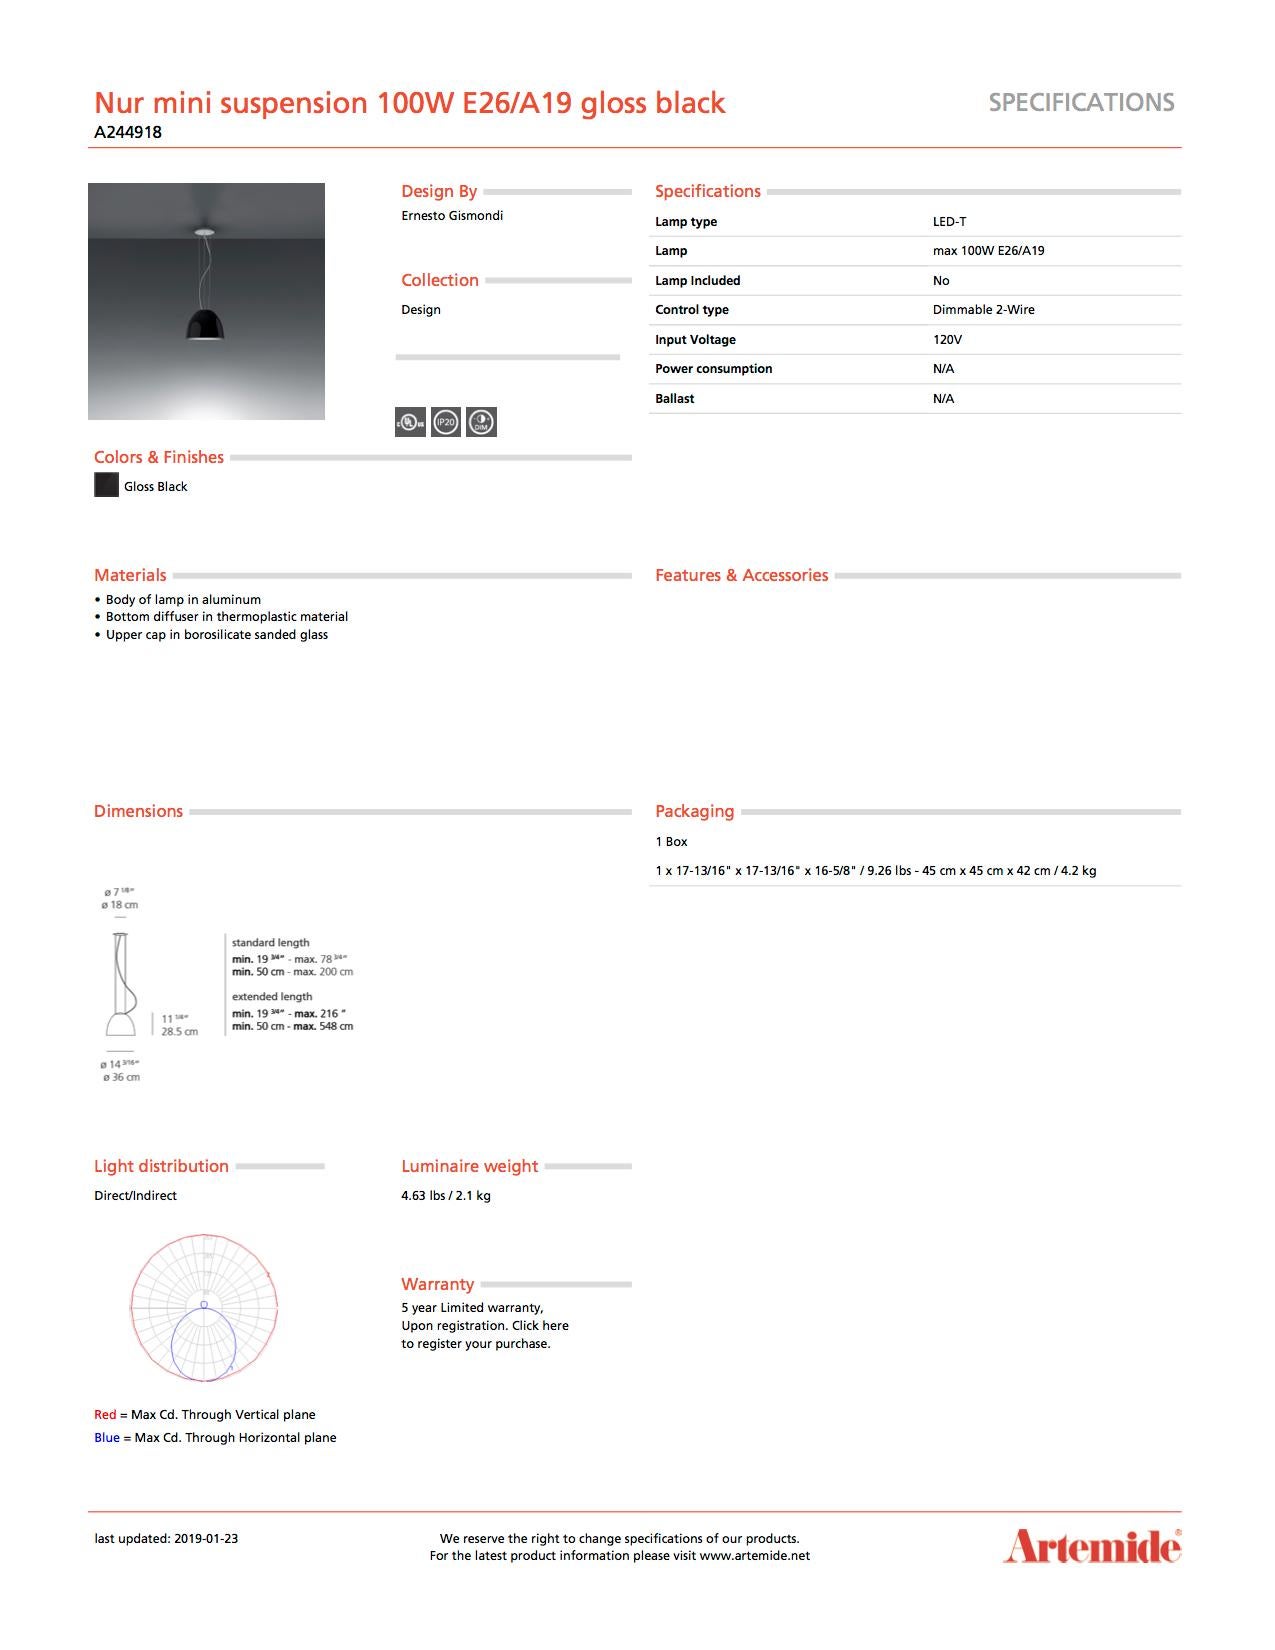 Italian Artemide Nur Mini Suspension Light 100W E26/A19 in Gloss Black For Sale